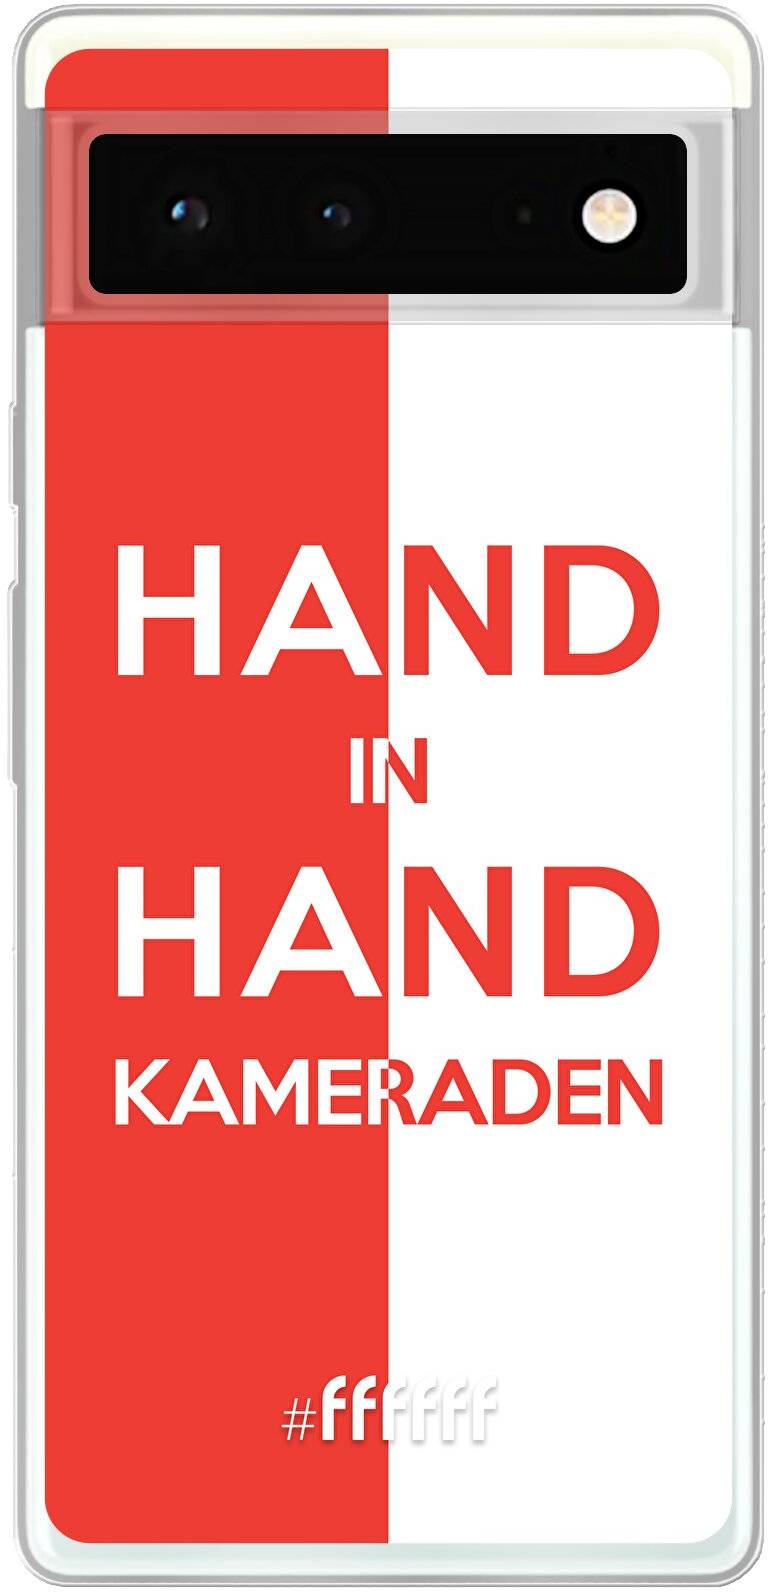 Feyenoord - Hand in hand, kameraden Pixel 6